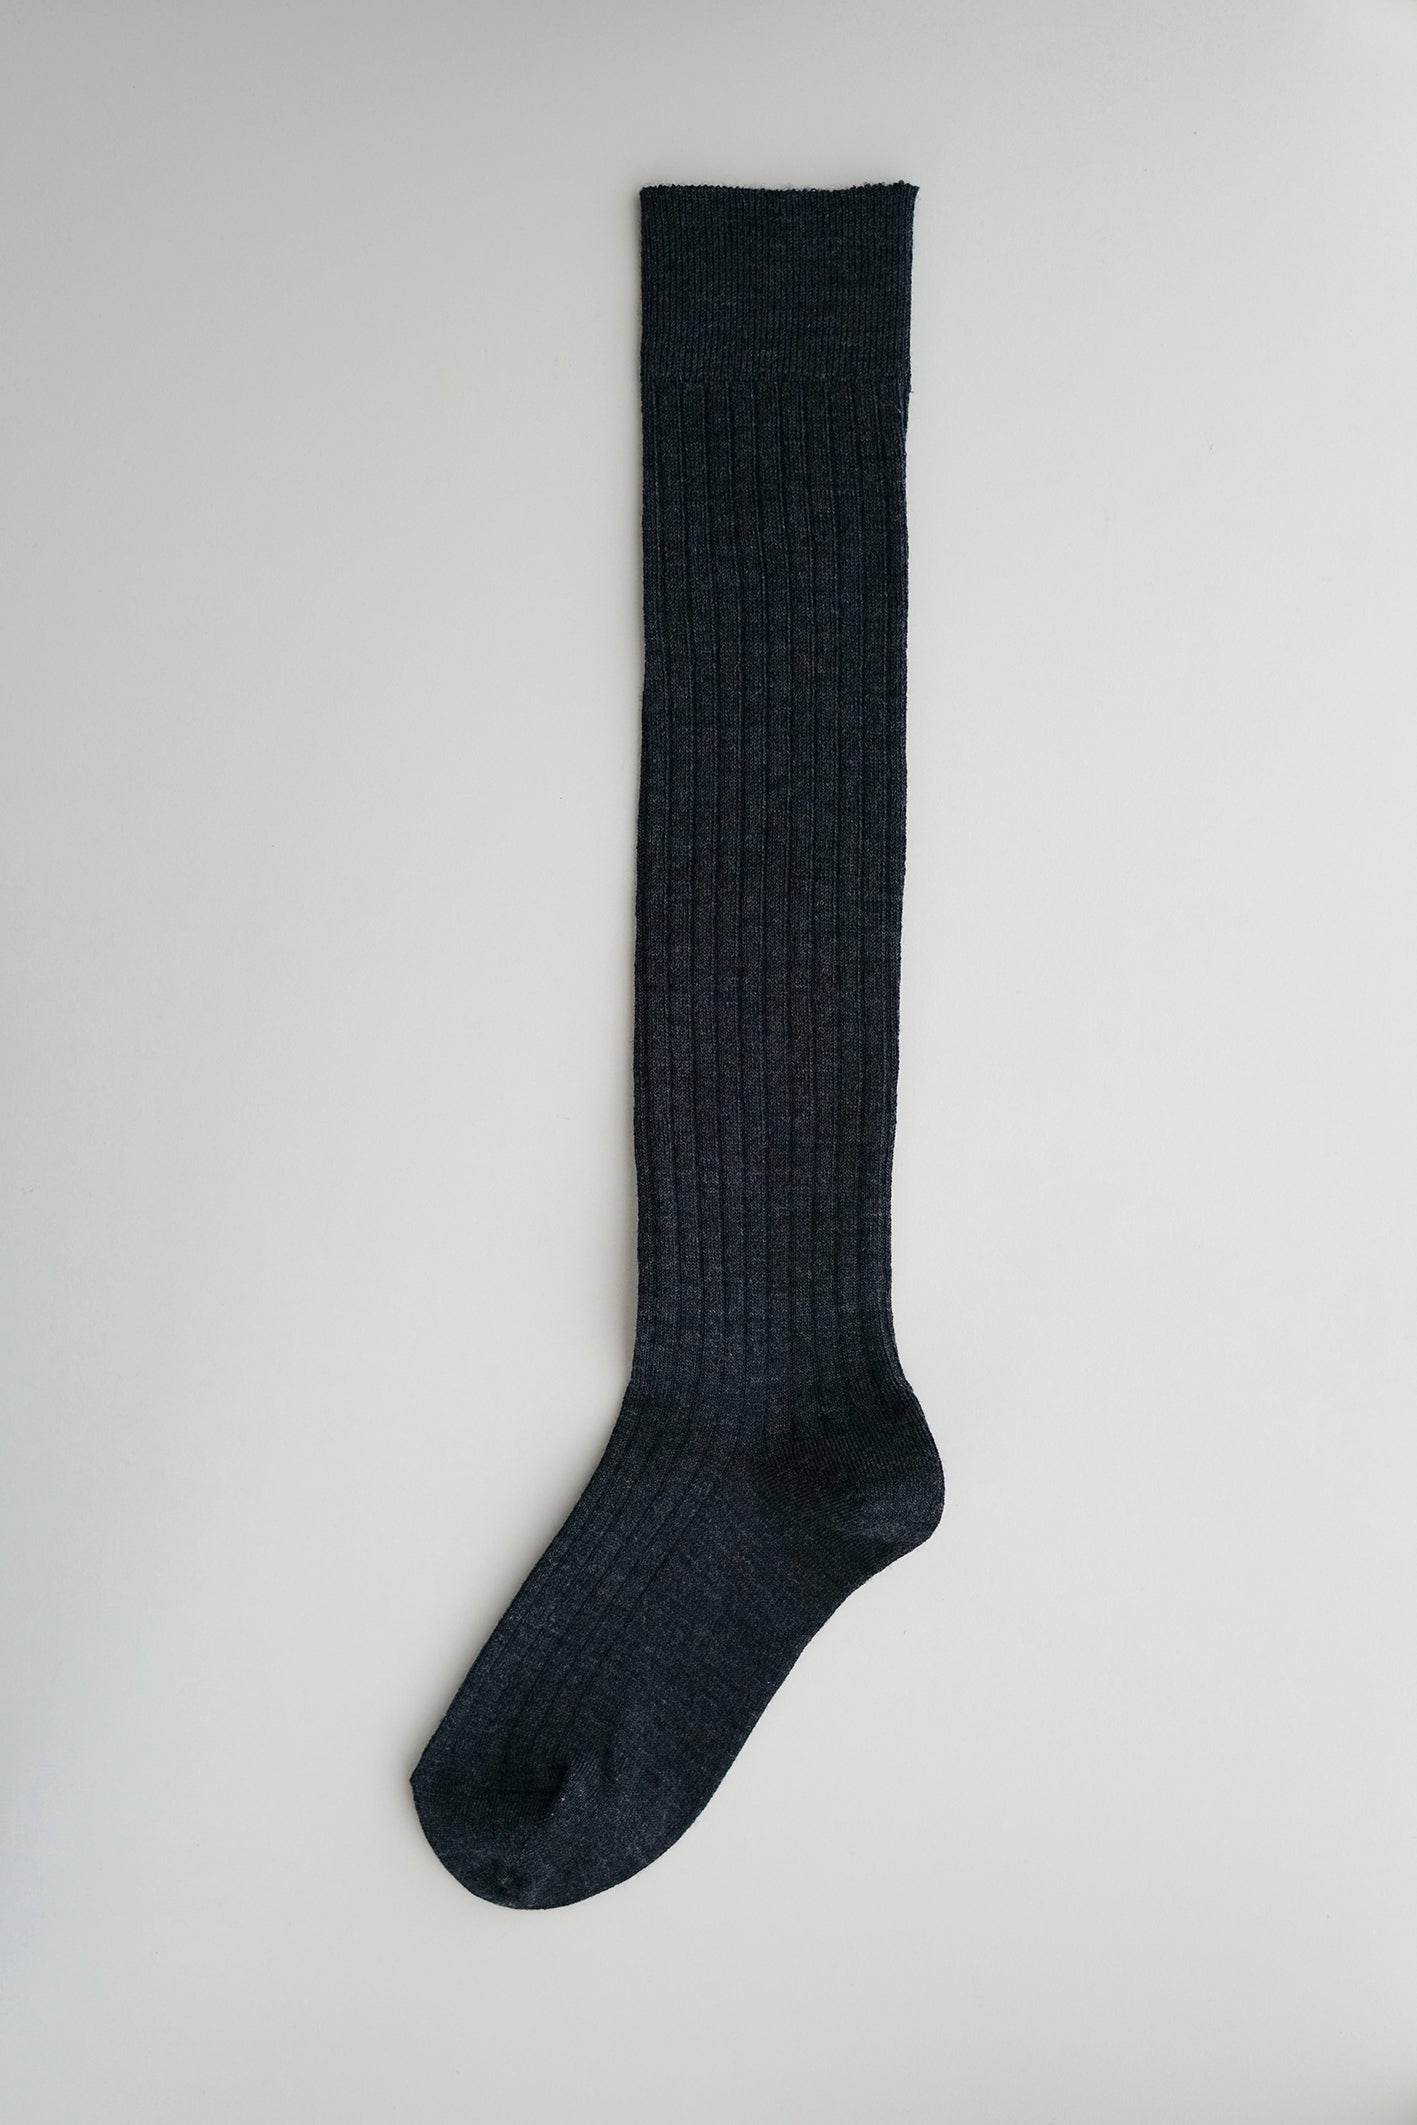 Hakne // Merino Wool Ribbed High Socks // Charcoal